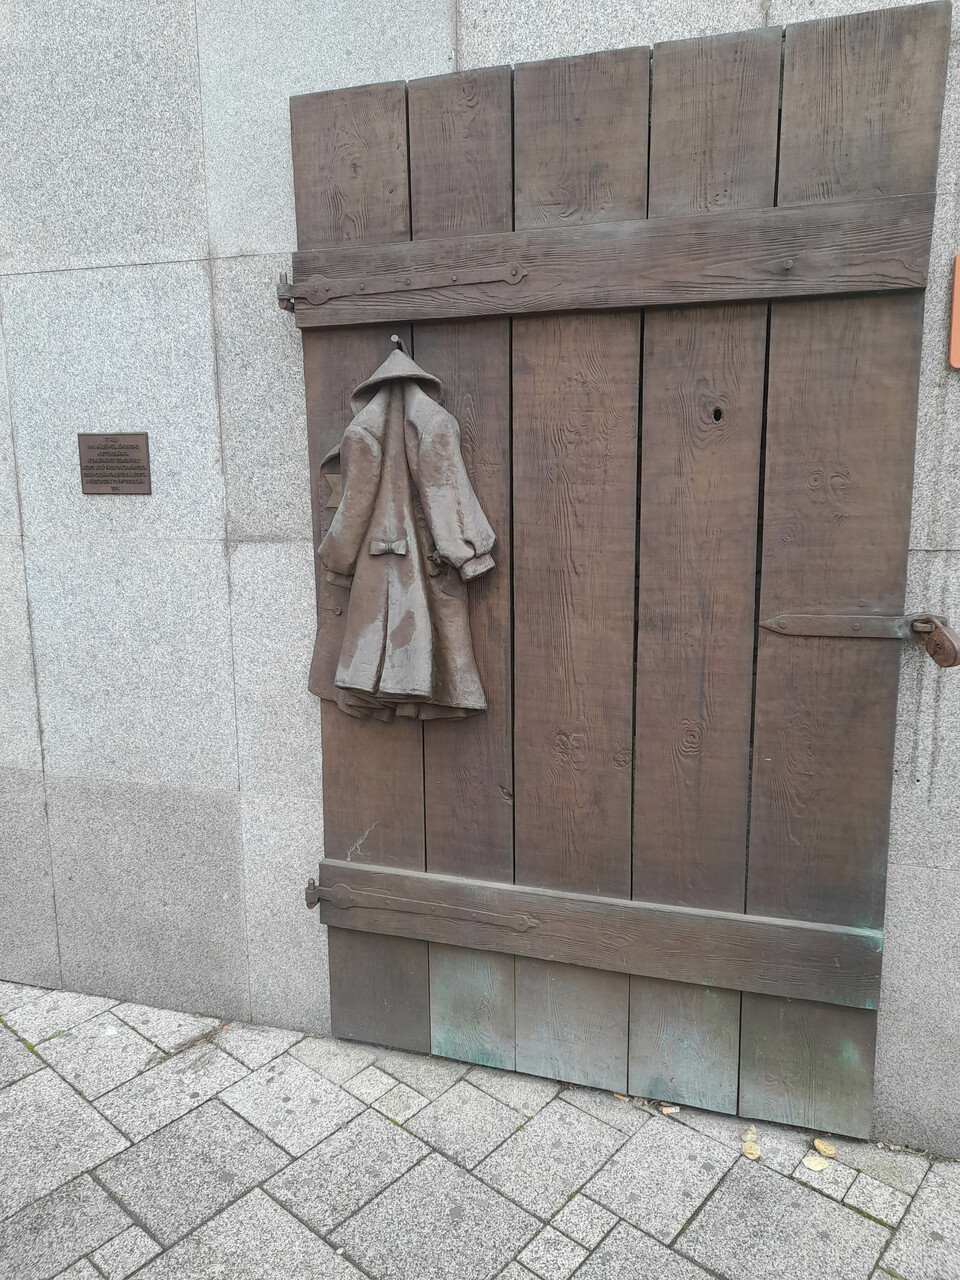 Gettó kapu, Holokauszt-emlékmű. A szerző felvétele.
